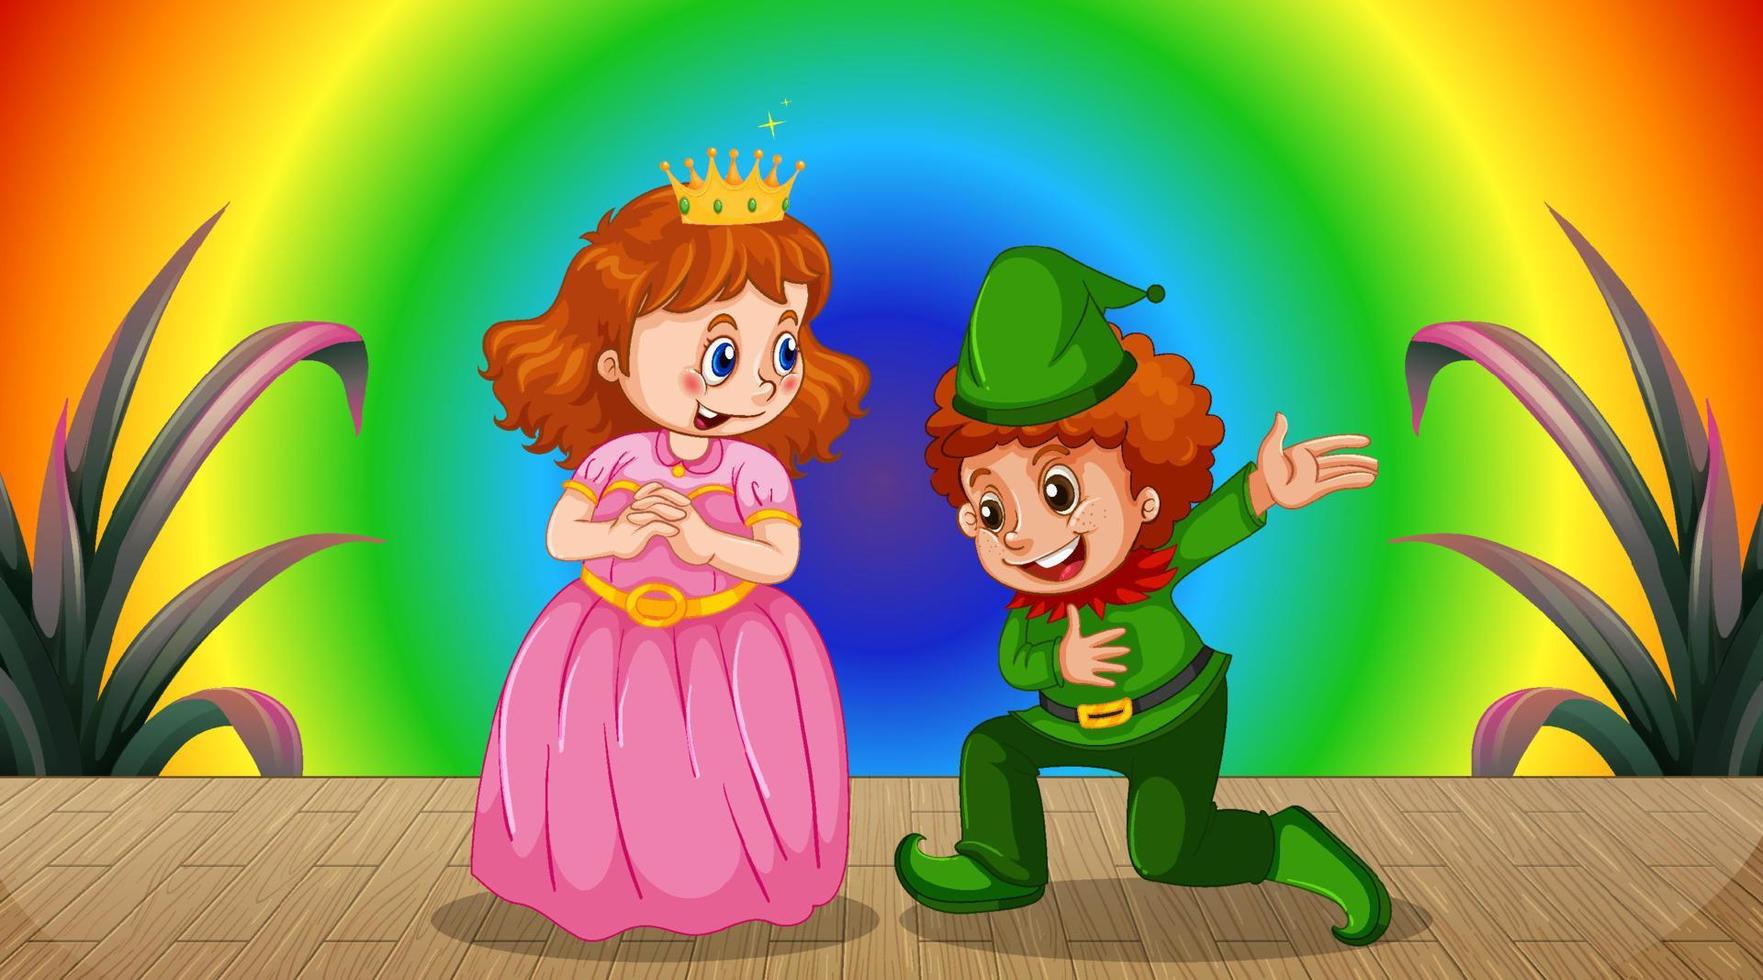 personnage de dessin animé princesse et enfant sur fond dégradé arc-en-ciel vecteur